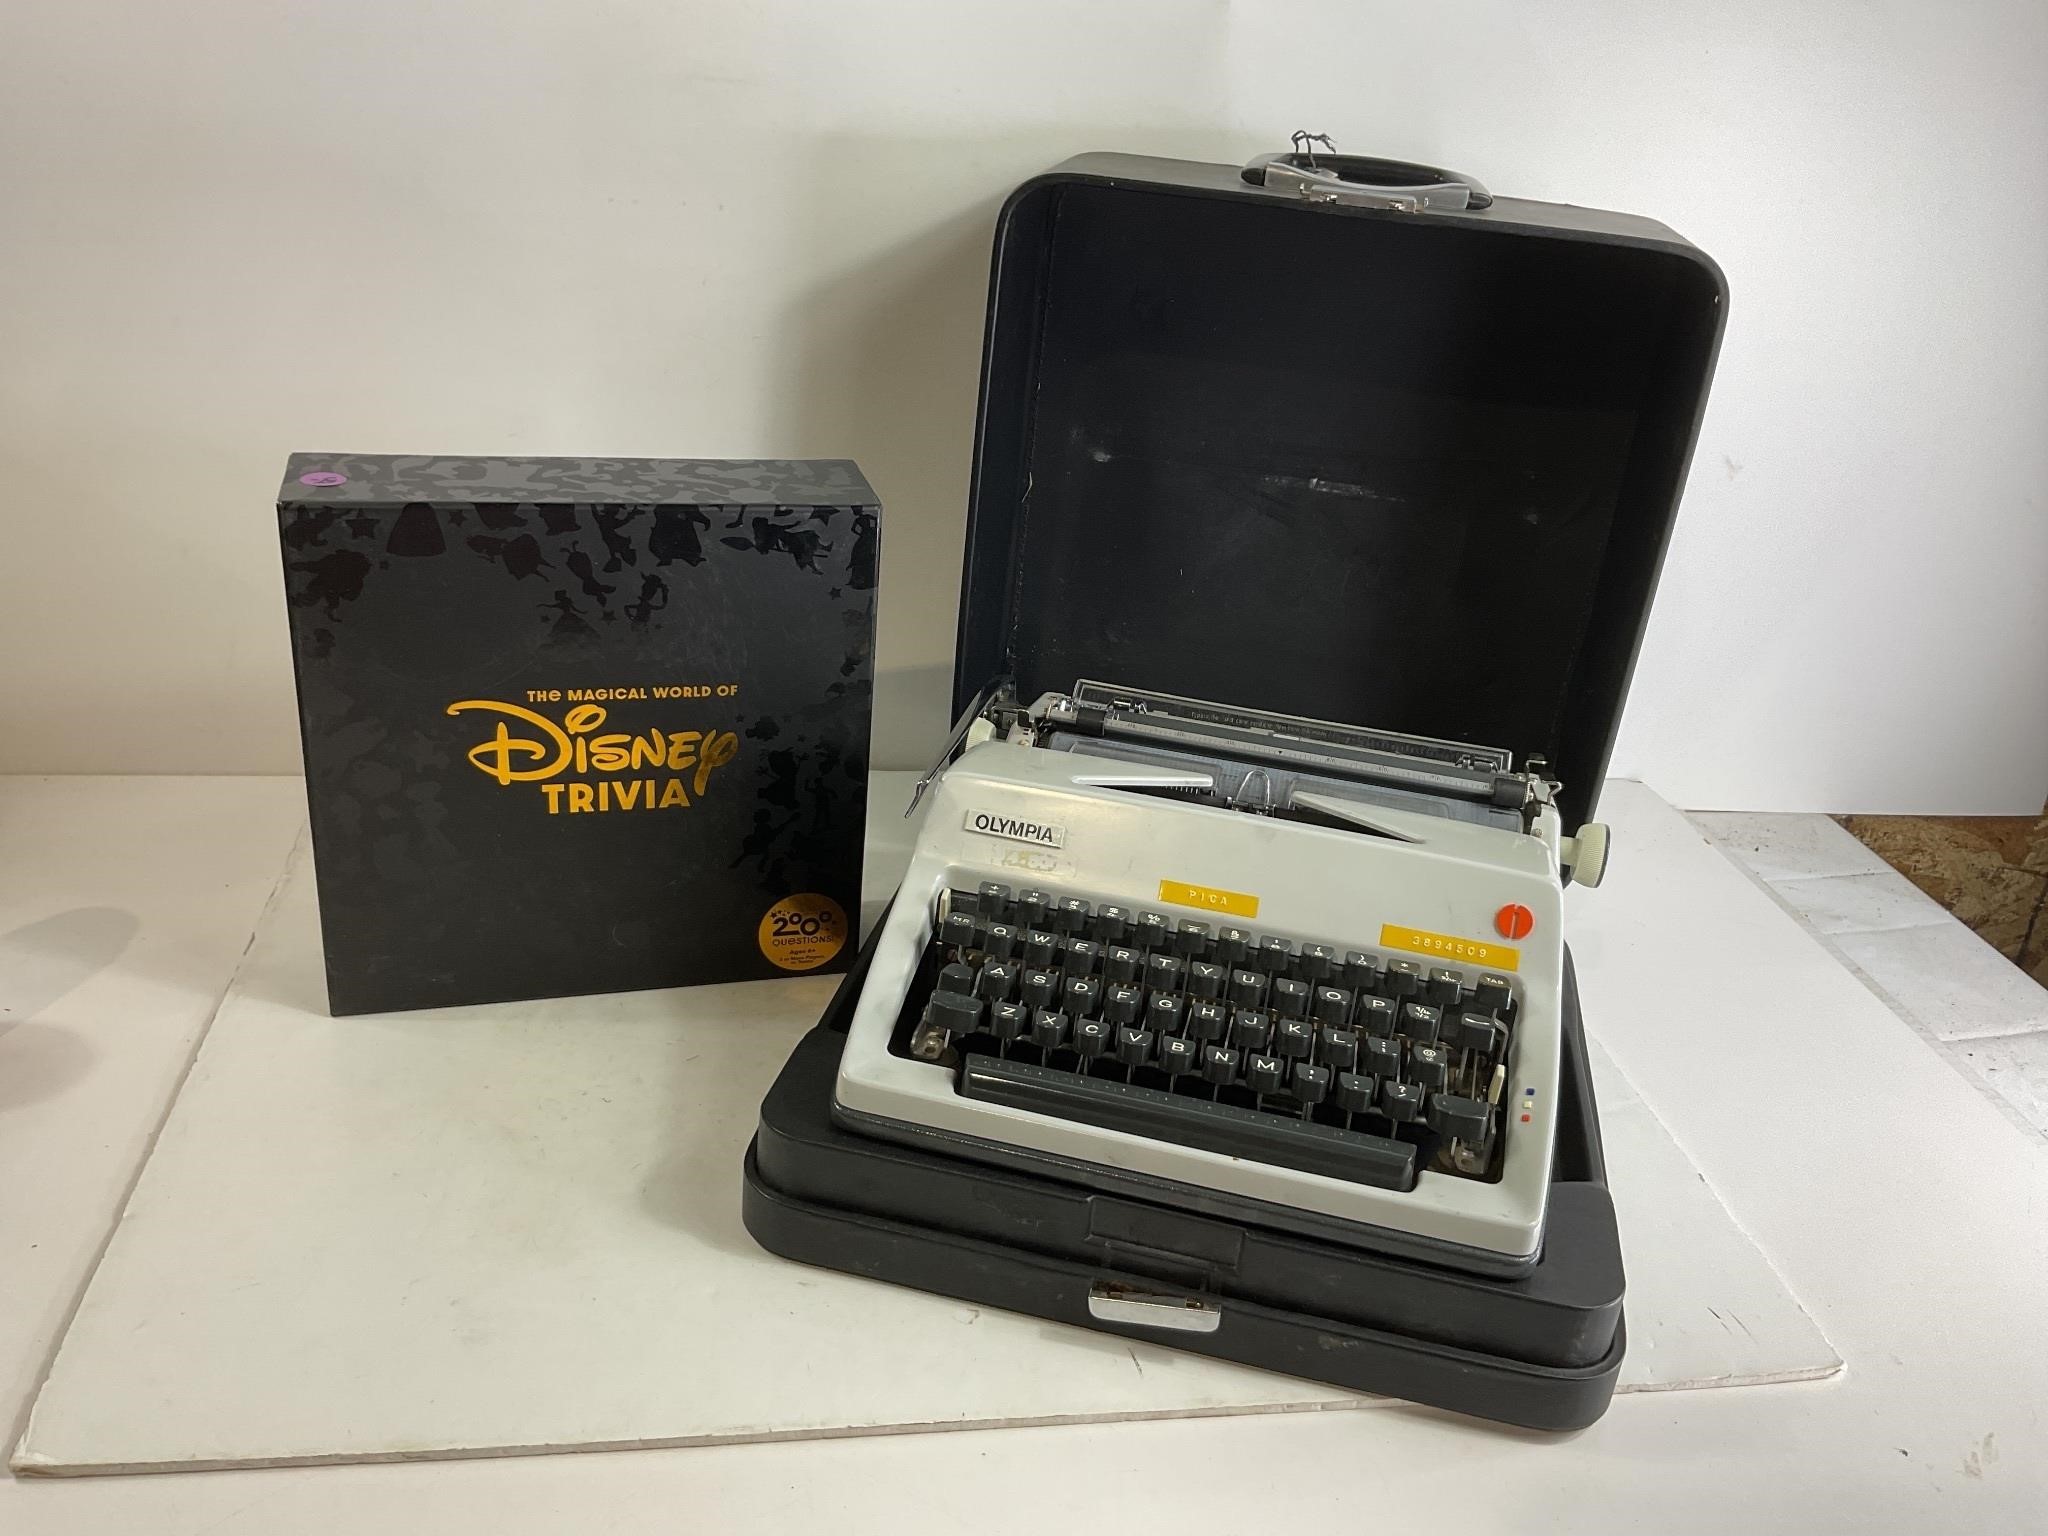 Disney Trivia & Vintage Olympia Typewriiter